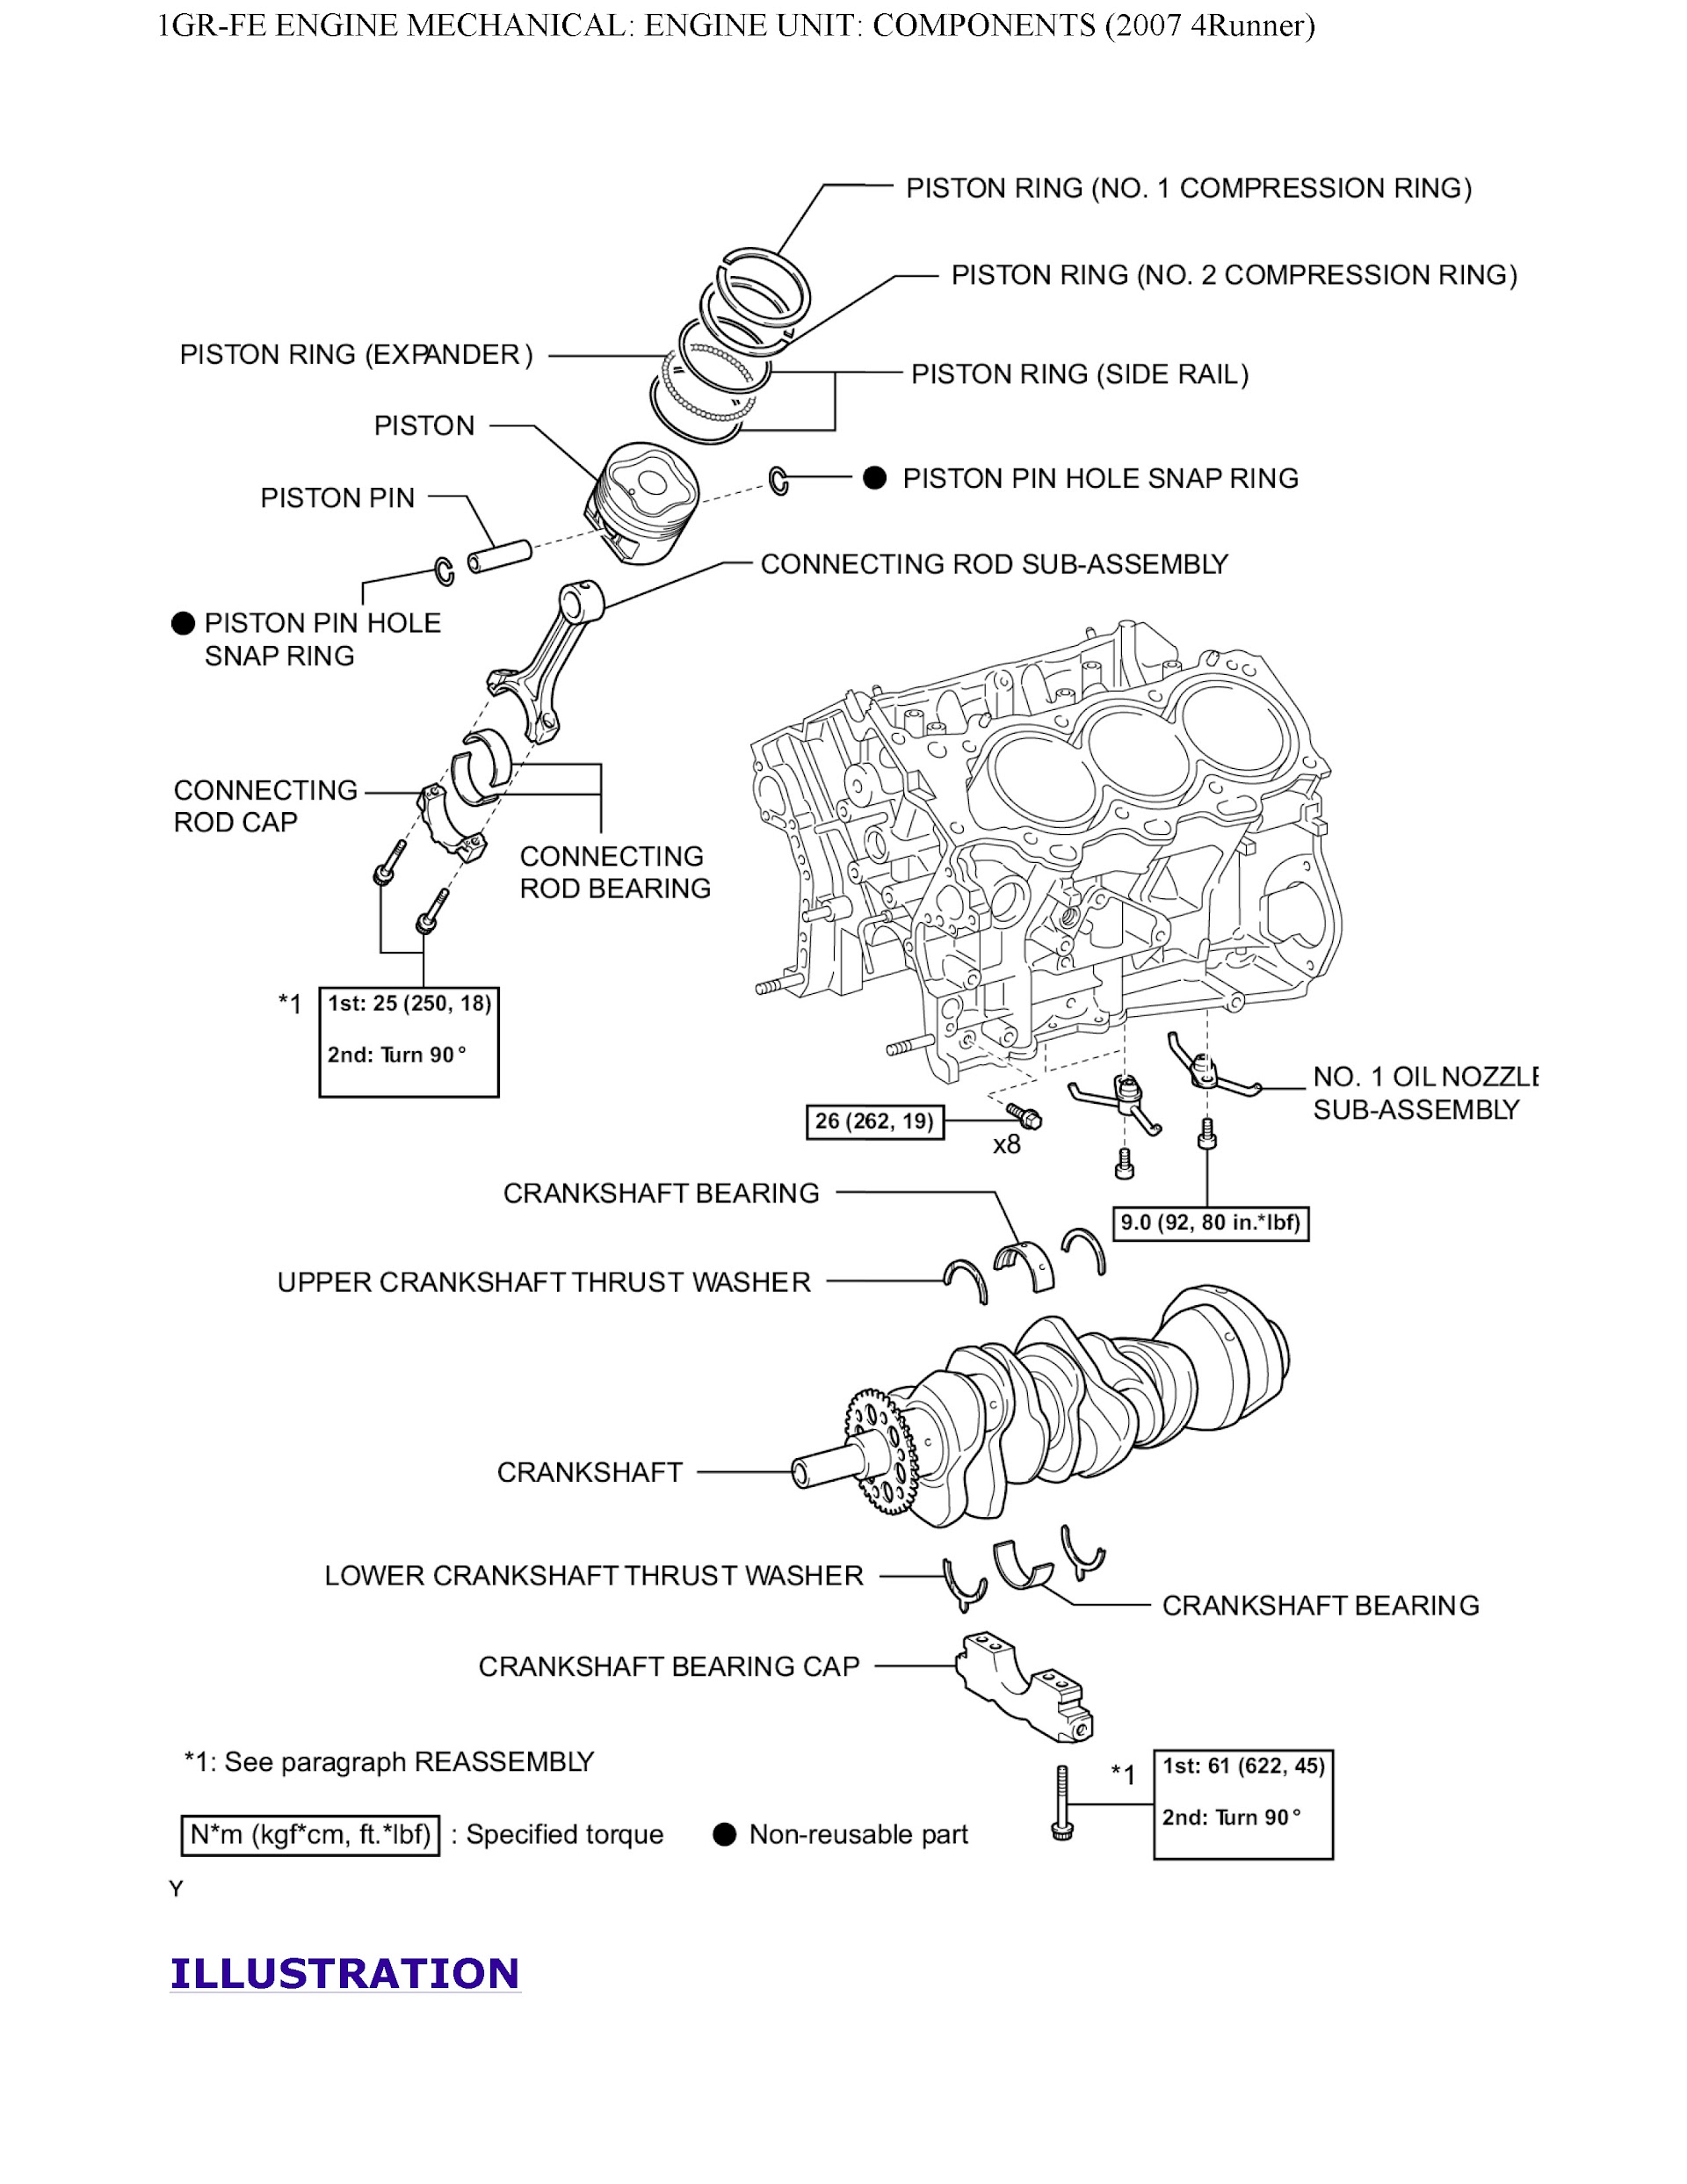 2007 Toyota 4Runner Repair Manual, Engine Unit